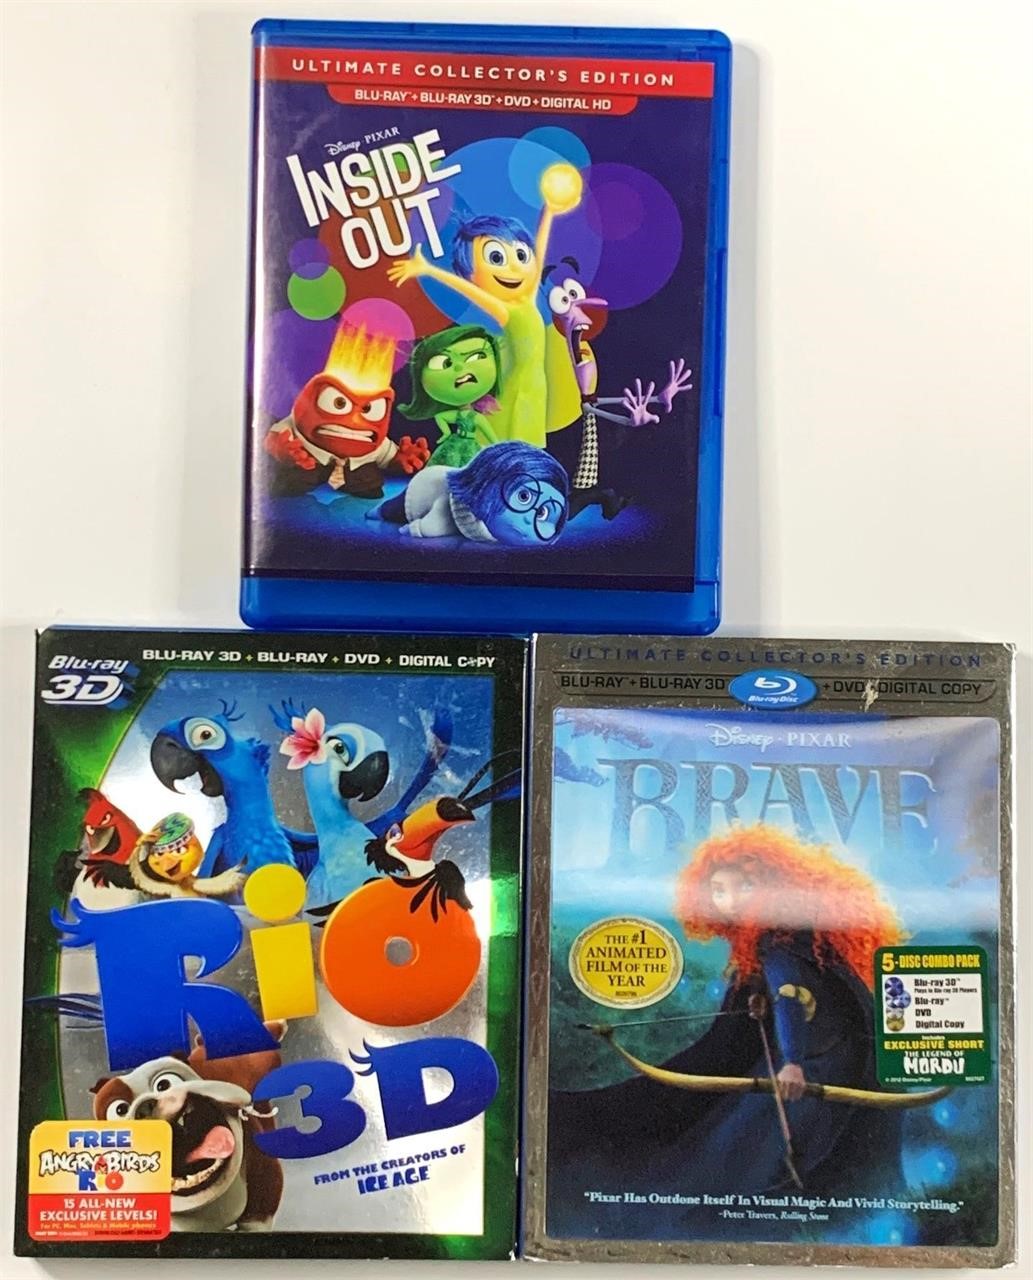 BLU-RAY & 3D Digital HD Discs - 3 Titles